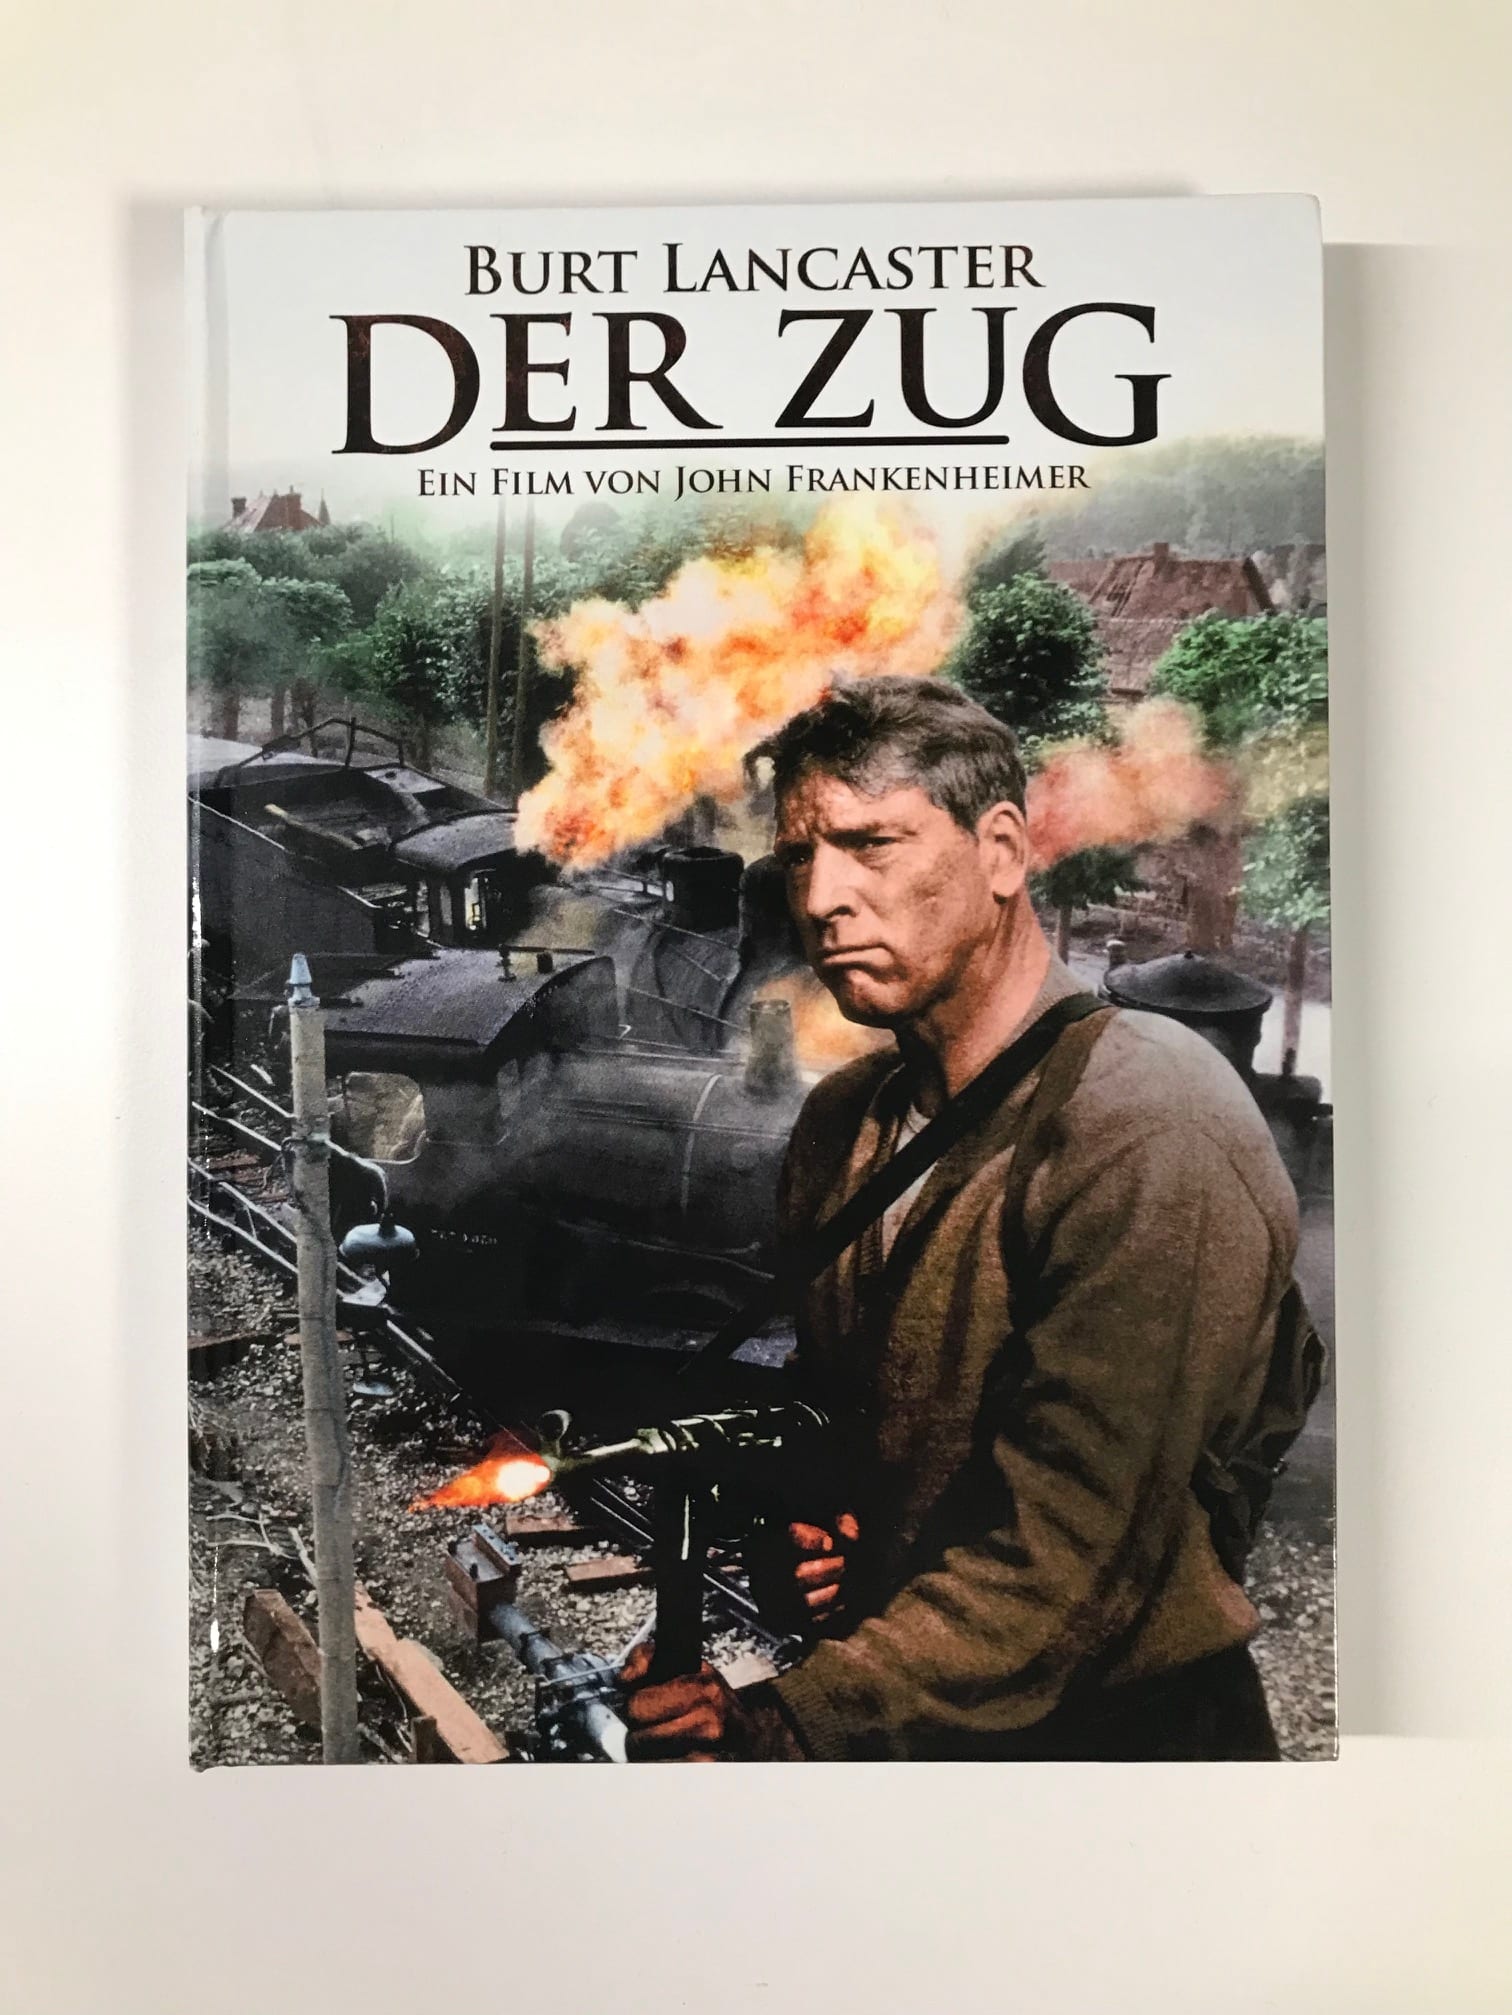 [Review] Der Zug (1964) mit Burt Lancaster (im Blu-ray und DVD Mediabook)